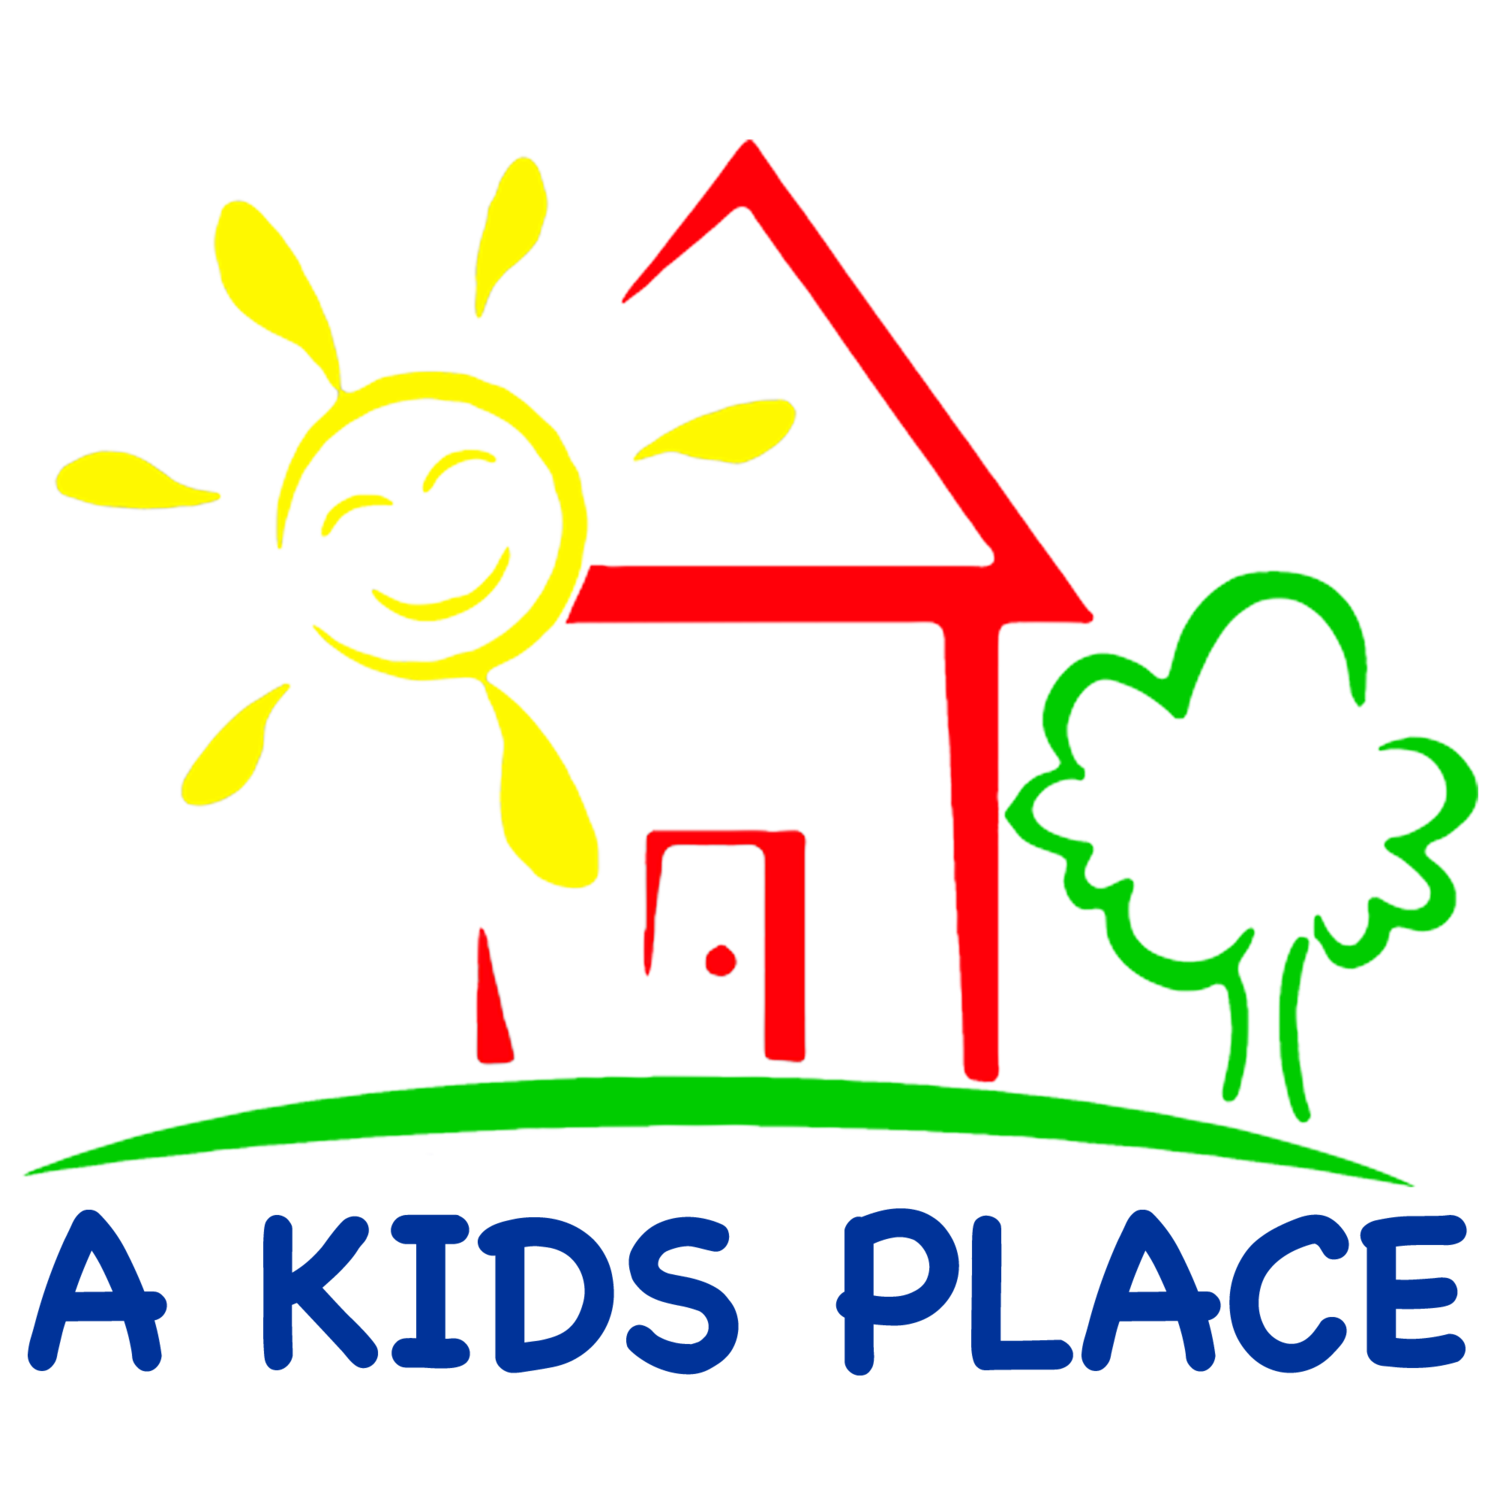 A Kids Place, Inc.